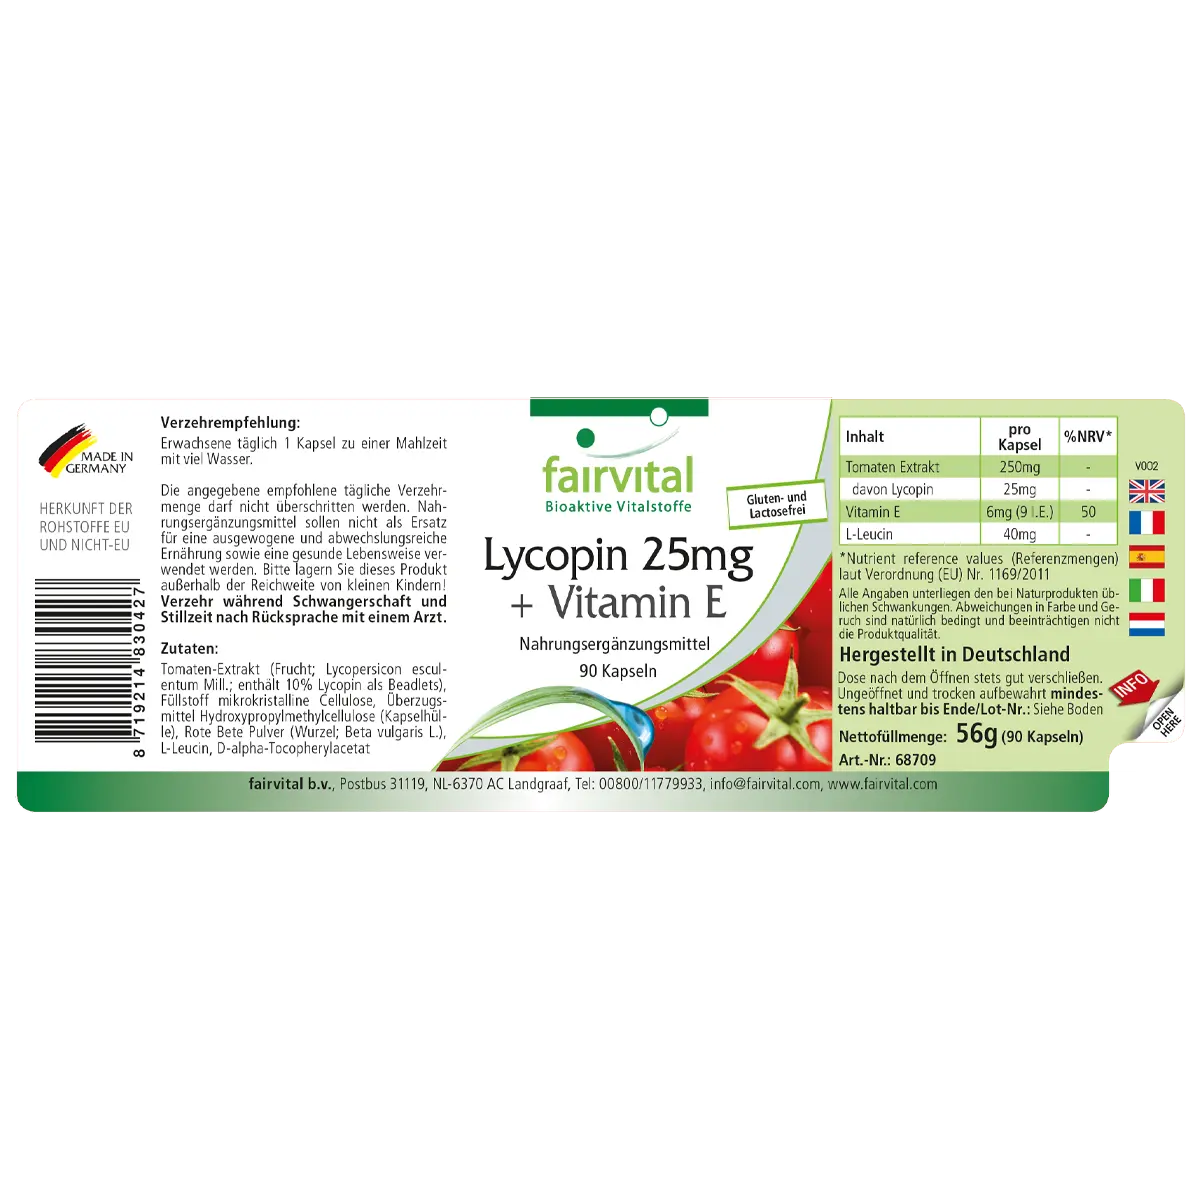 Licopene 25mg + Vitamina E - 90 capsule